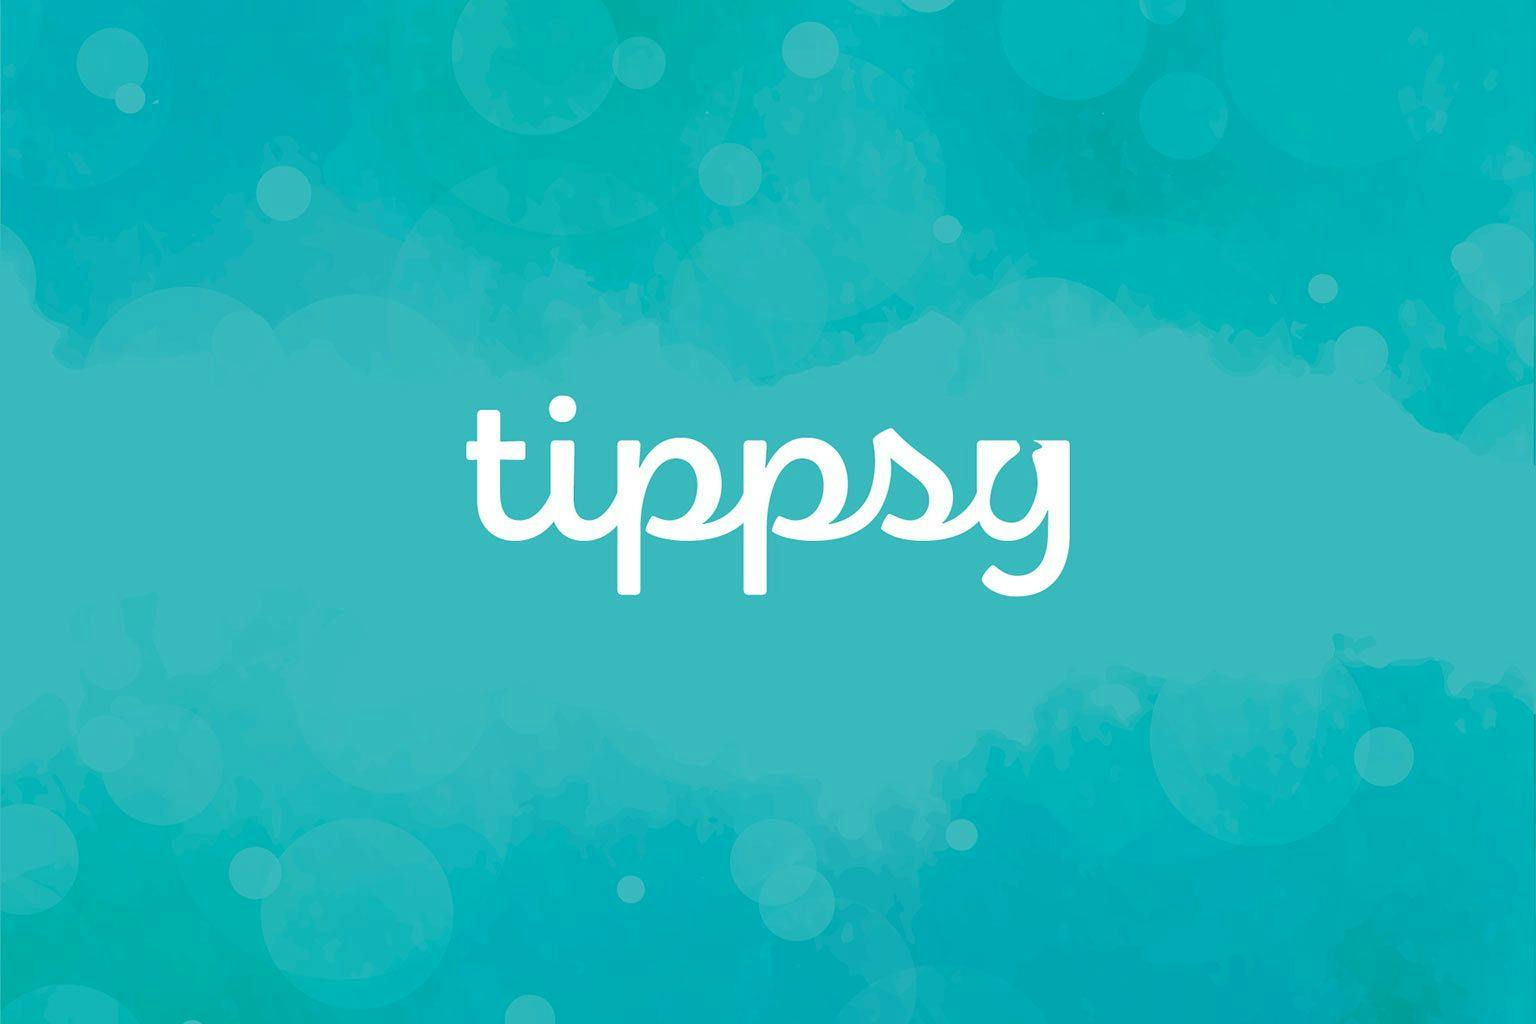 Tippsy logo.